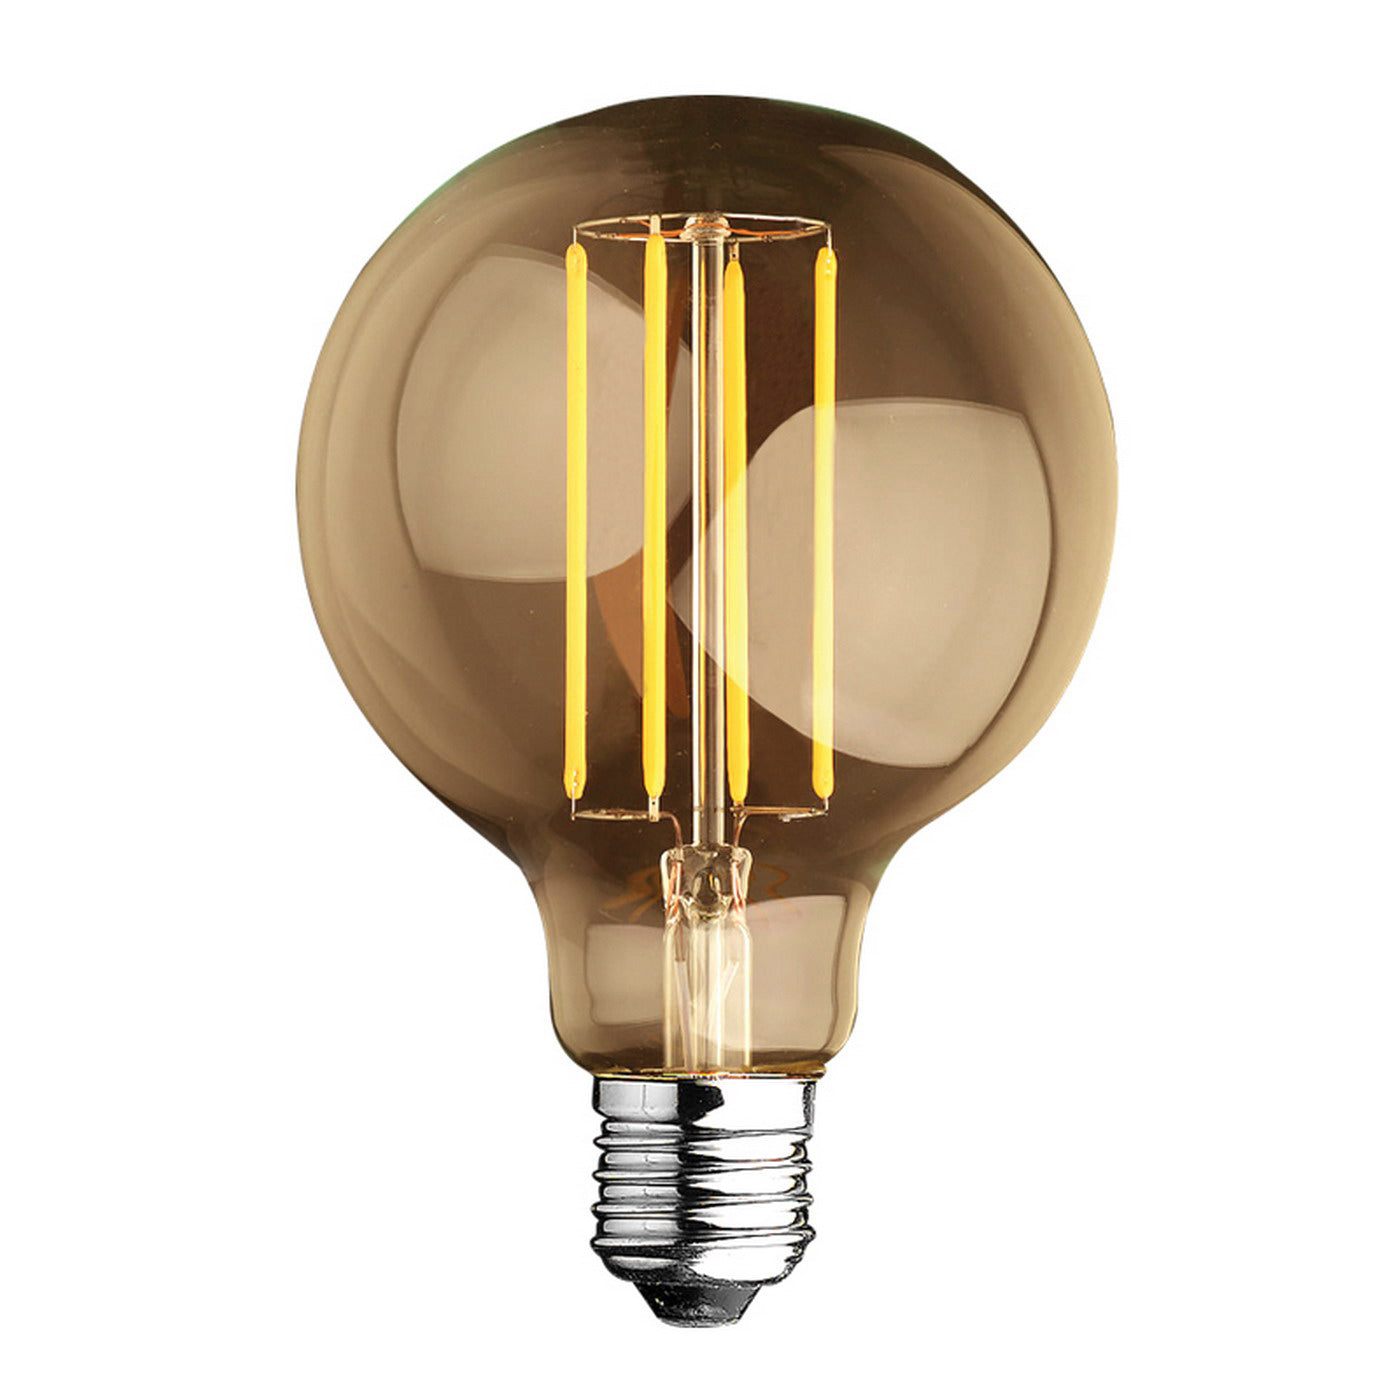 Alcapower Lampadina LED, lampadina Globo Edison a Filamento LED, 4W, Luce Calda 2700K, attacco E27